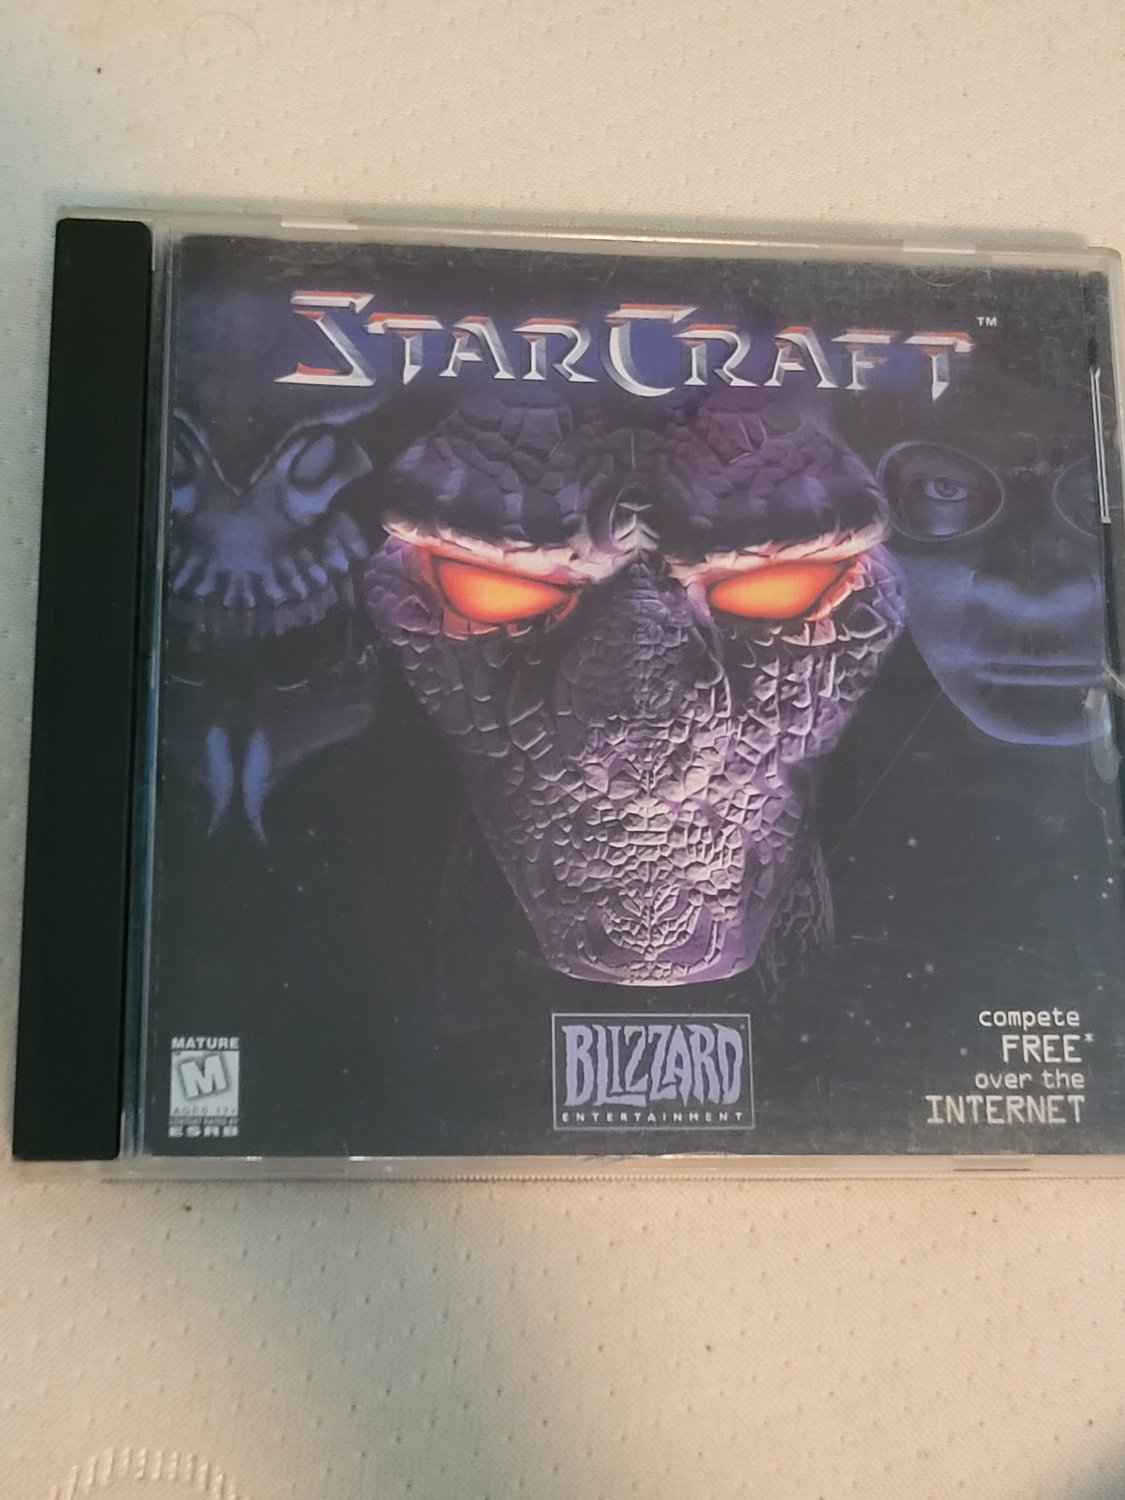 StarCraft (PC, 1998) - European Version